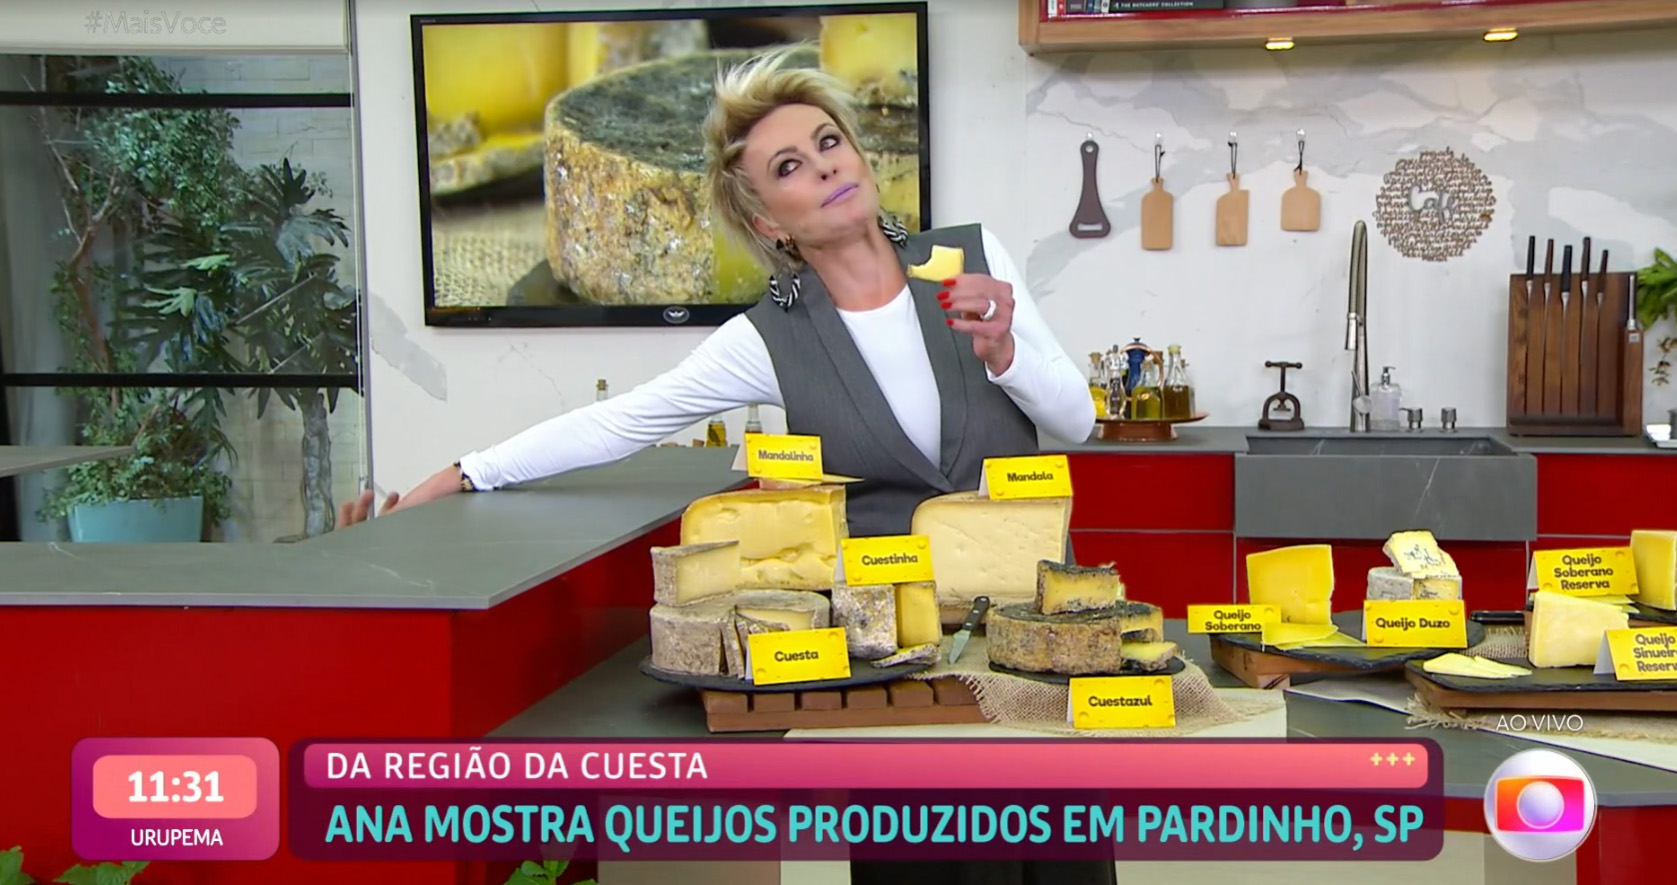 Foto retirada do Globoplay de Ana Maria Braga no estúdio do 'Mais Você' esticando a mão para entregar um pedaço de queijo para o Louro Mané, cuja mão aparece